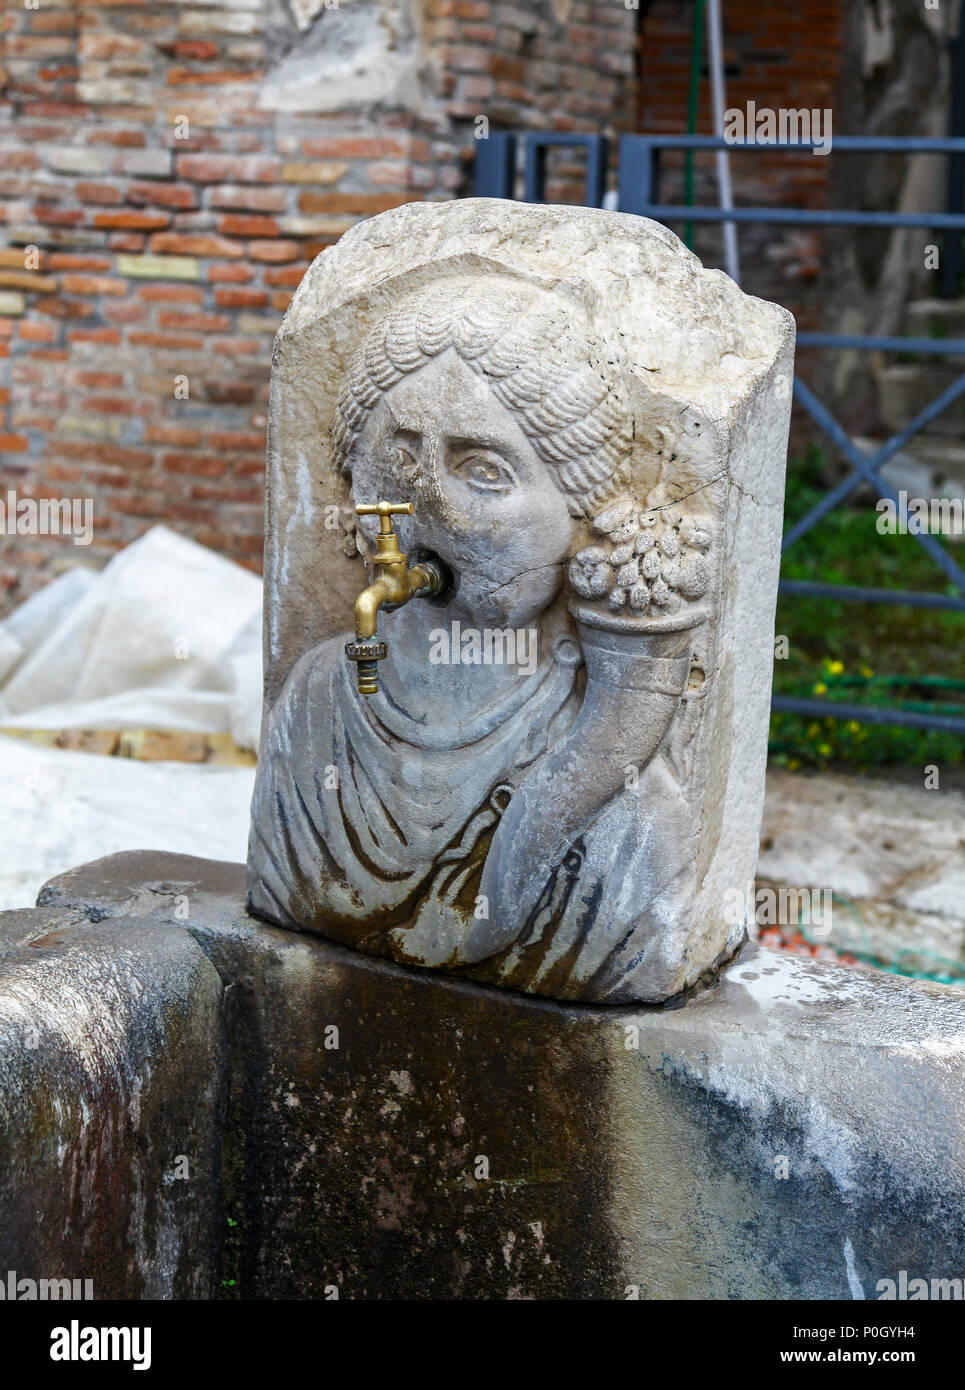 Ein Leitungswasser aus dem Mund eines steinernen Brunnen in der Form einer Personen Kopf an der Ausgrabungsstätte von Pompeji, Pompei, Kampanien, Italien, Stockfoto